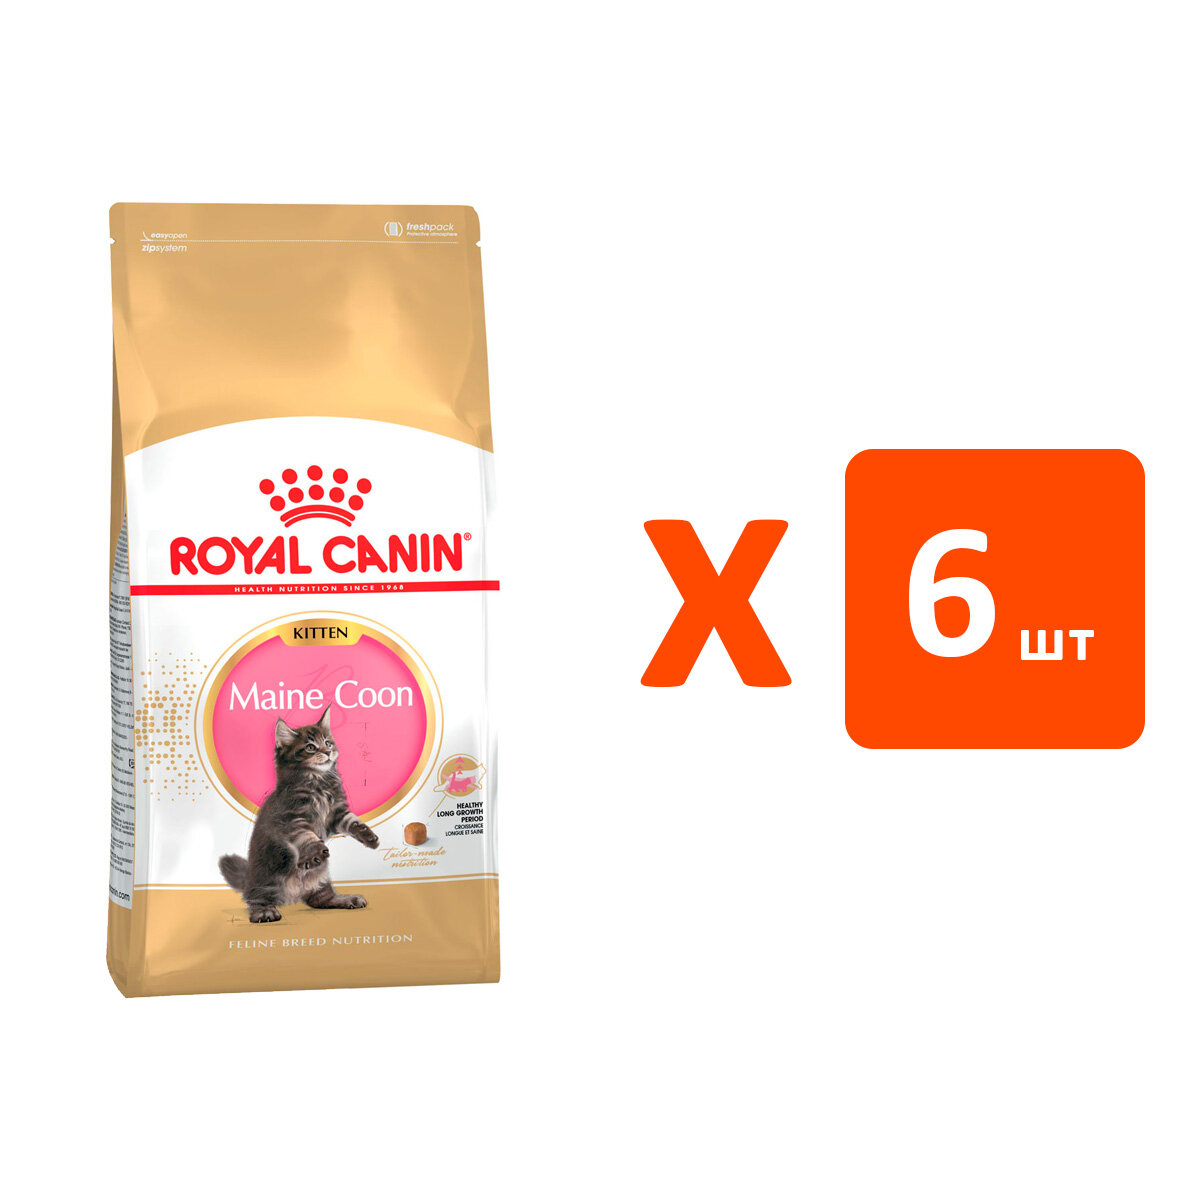 ROYAL CANIN MAINE COON KITTEN 36 для котят мэйн кун (2 кг х 6 шт)